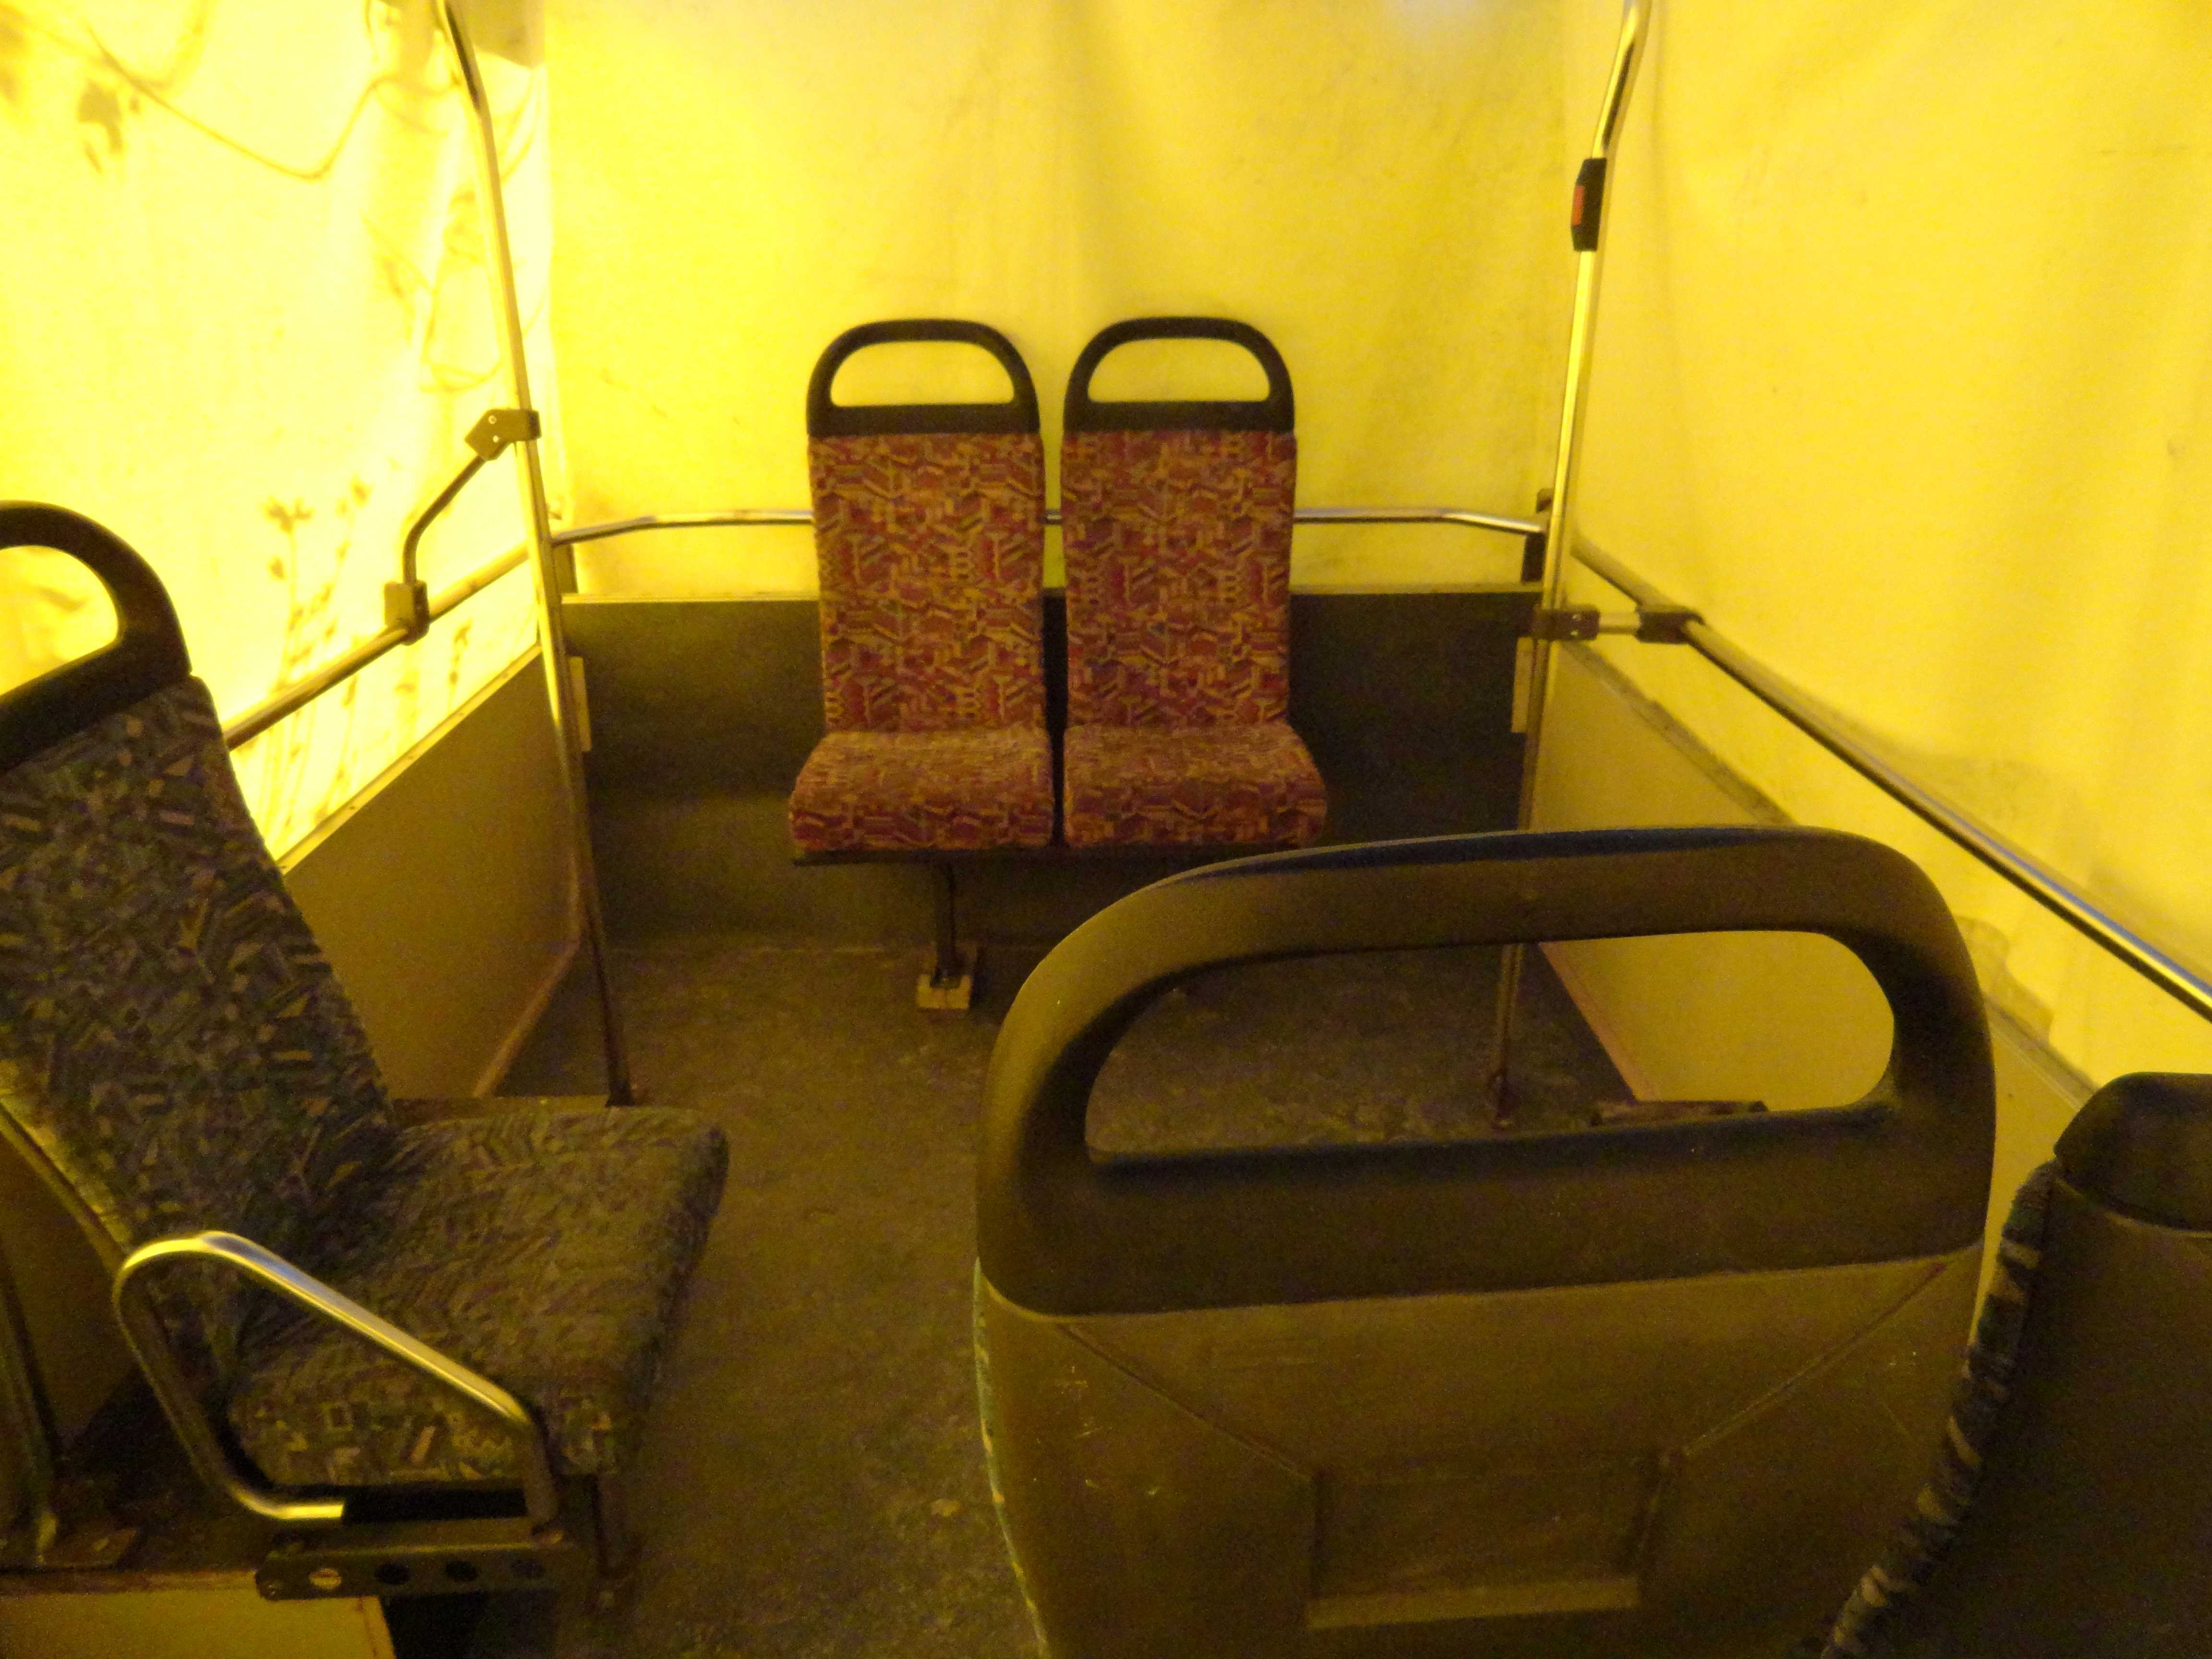 On remarque à l'intérieur de la caravane, les sièges de bus et les barres de maintient